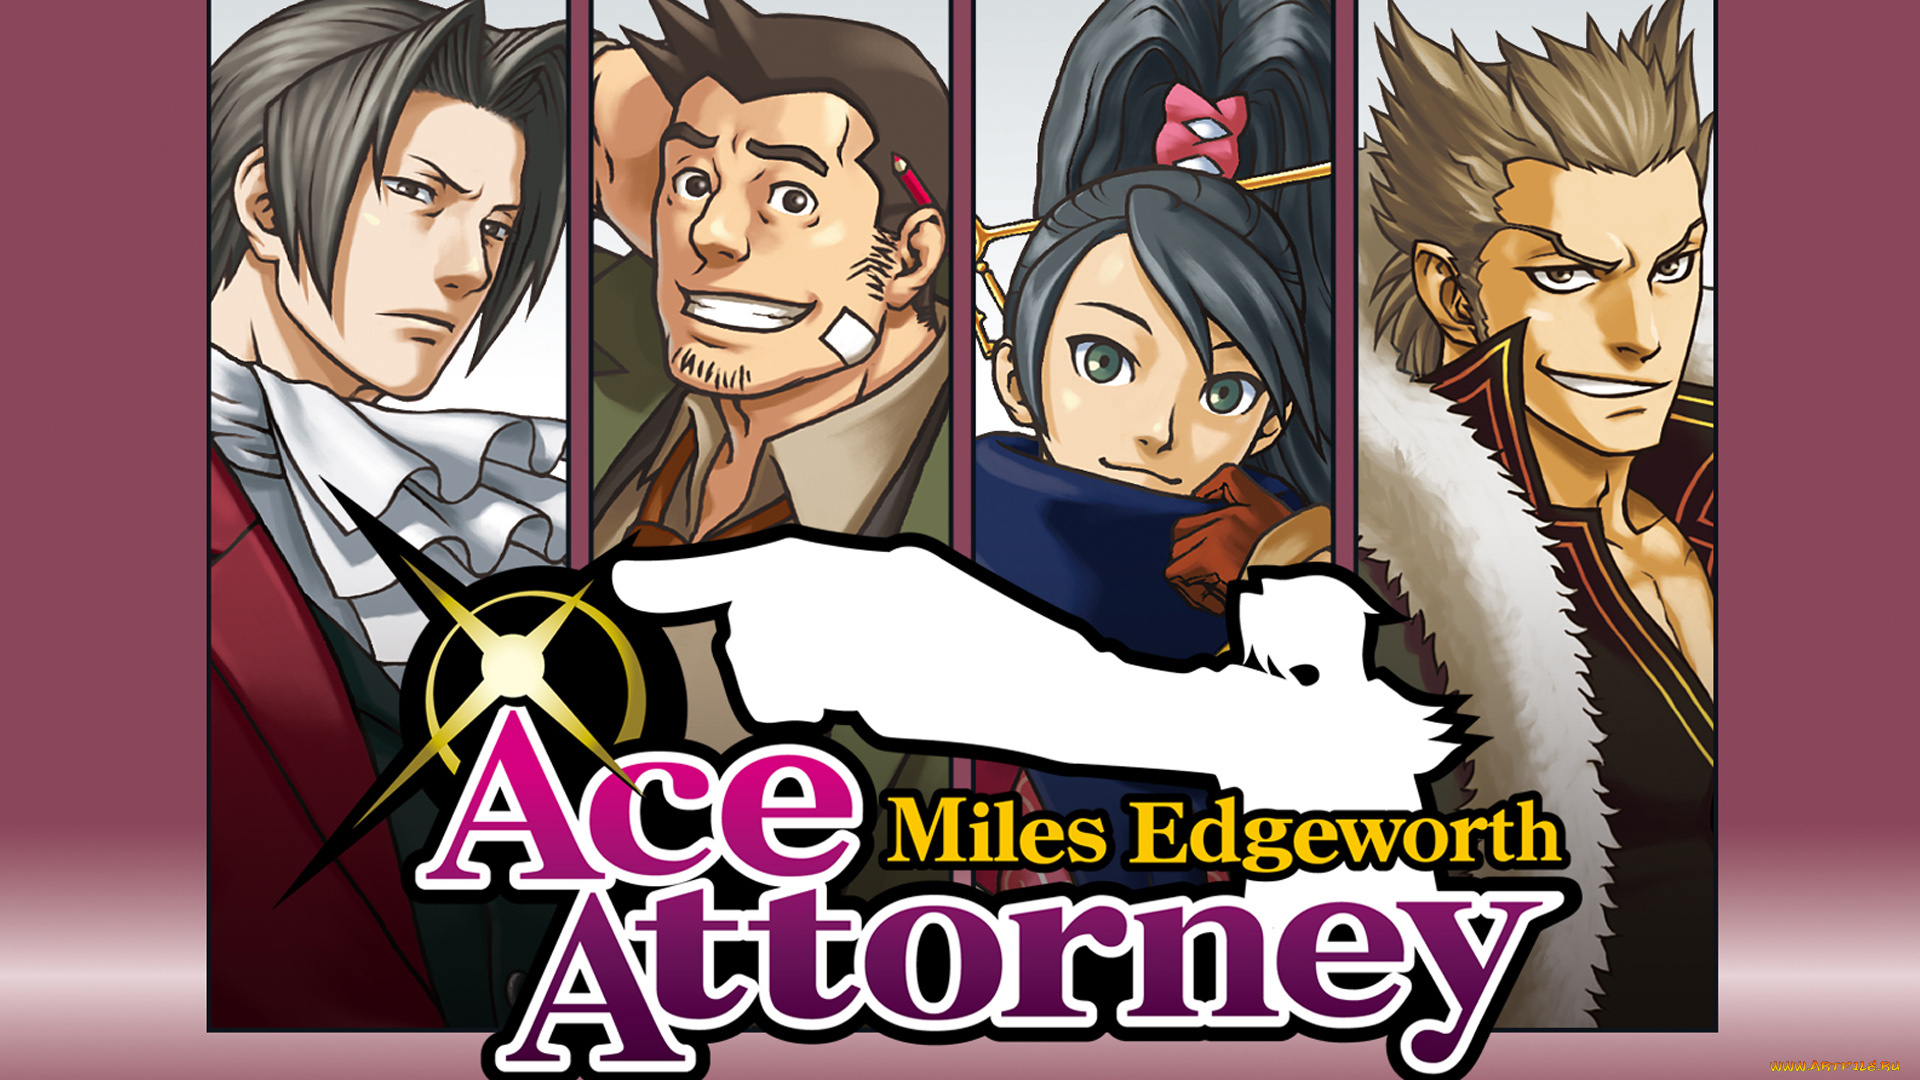 Miles edgeworth investigations. Ace attorney investigations Miles Edgeworth 2. Ace attorney investigations: Miles Edgeworth 2 обложка. Майлз Эджворт Ace attorney investigations. Ace attorney Майлз.